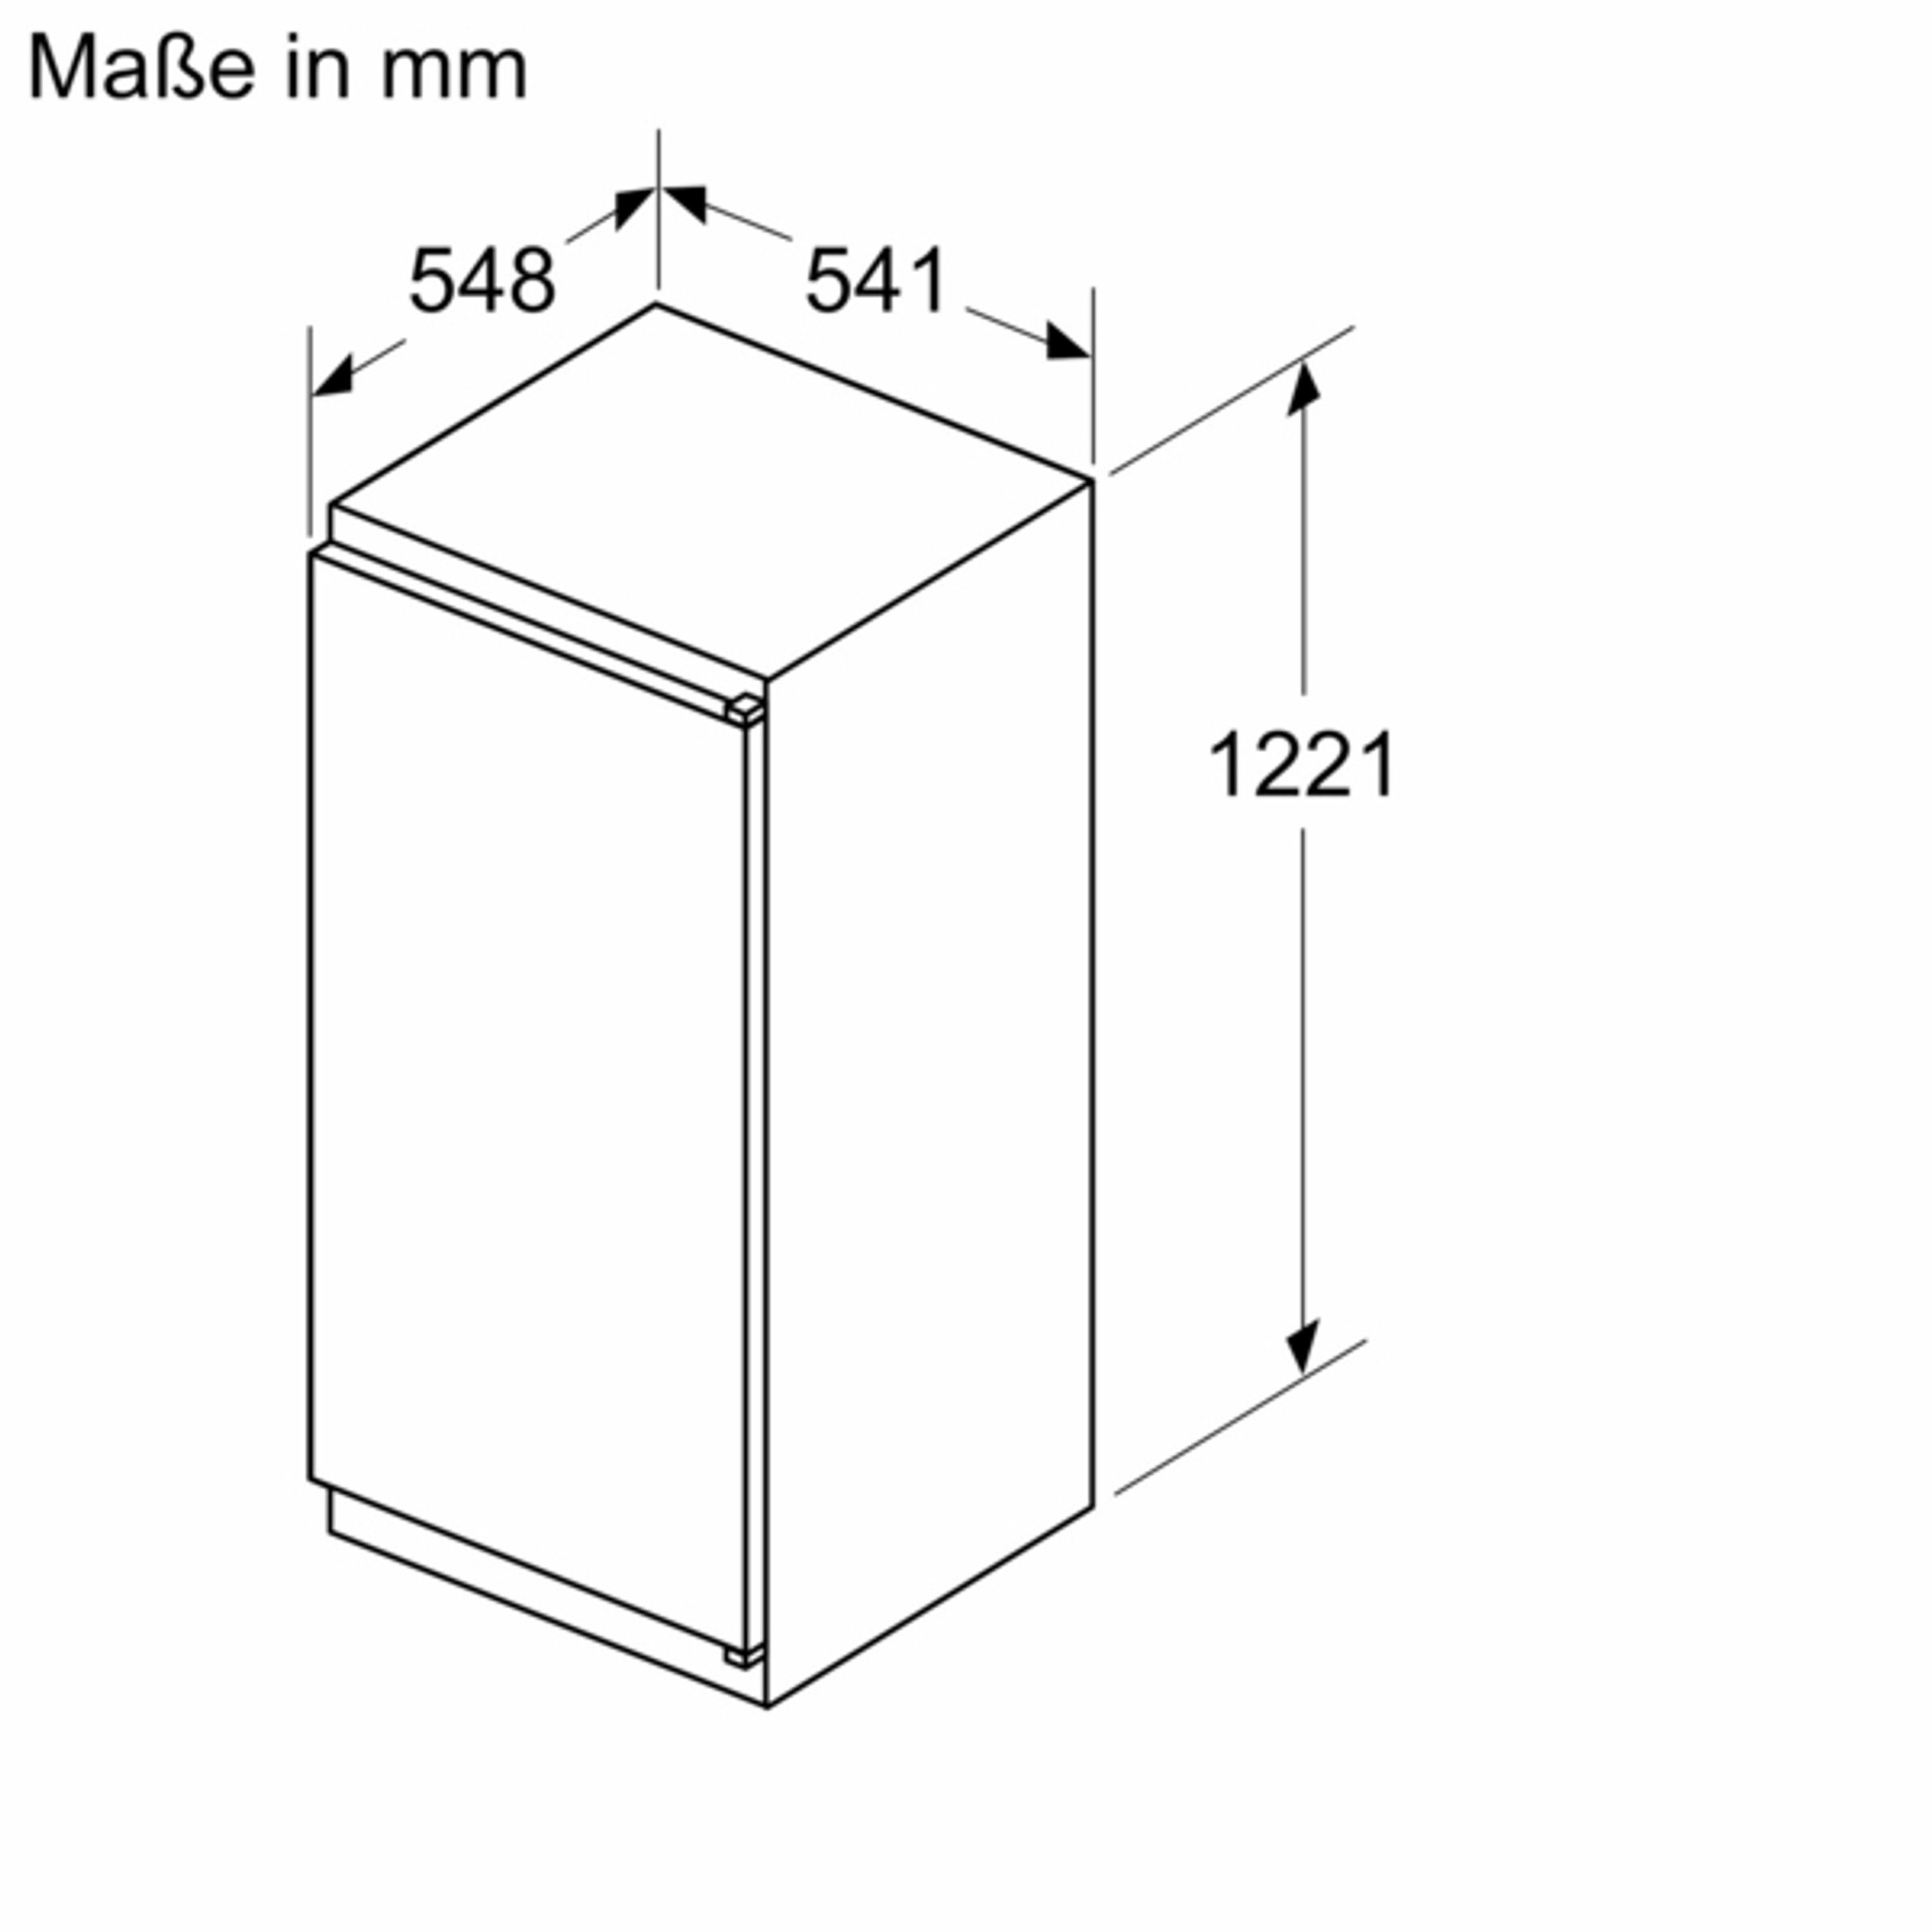 Einbaukühlschrank breit hoch, 122.1 cm BOSCH 54.1 cm KIL425SE0,